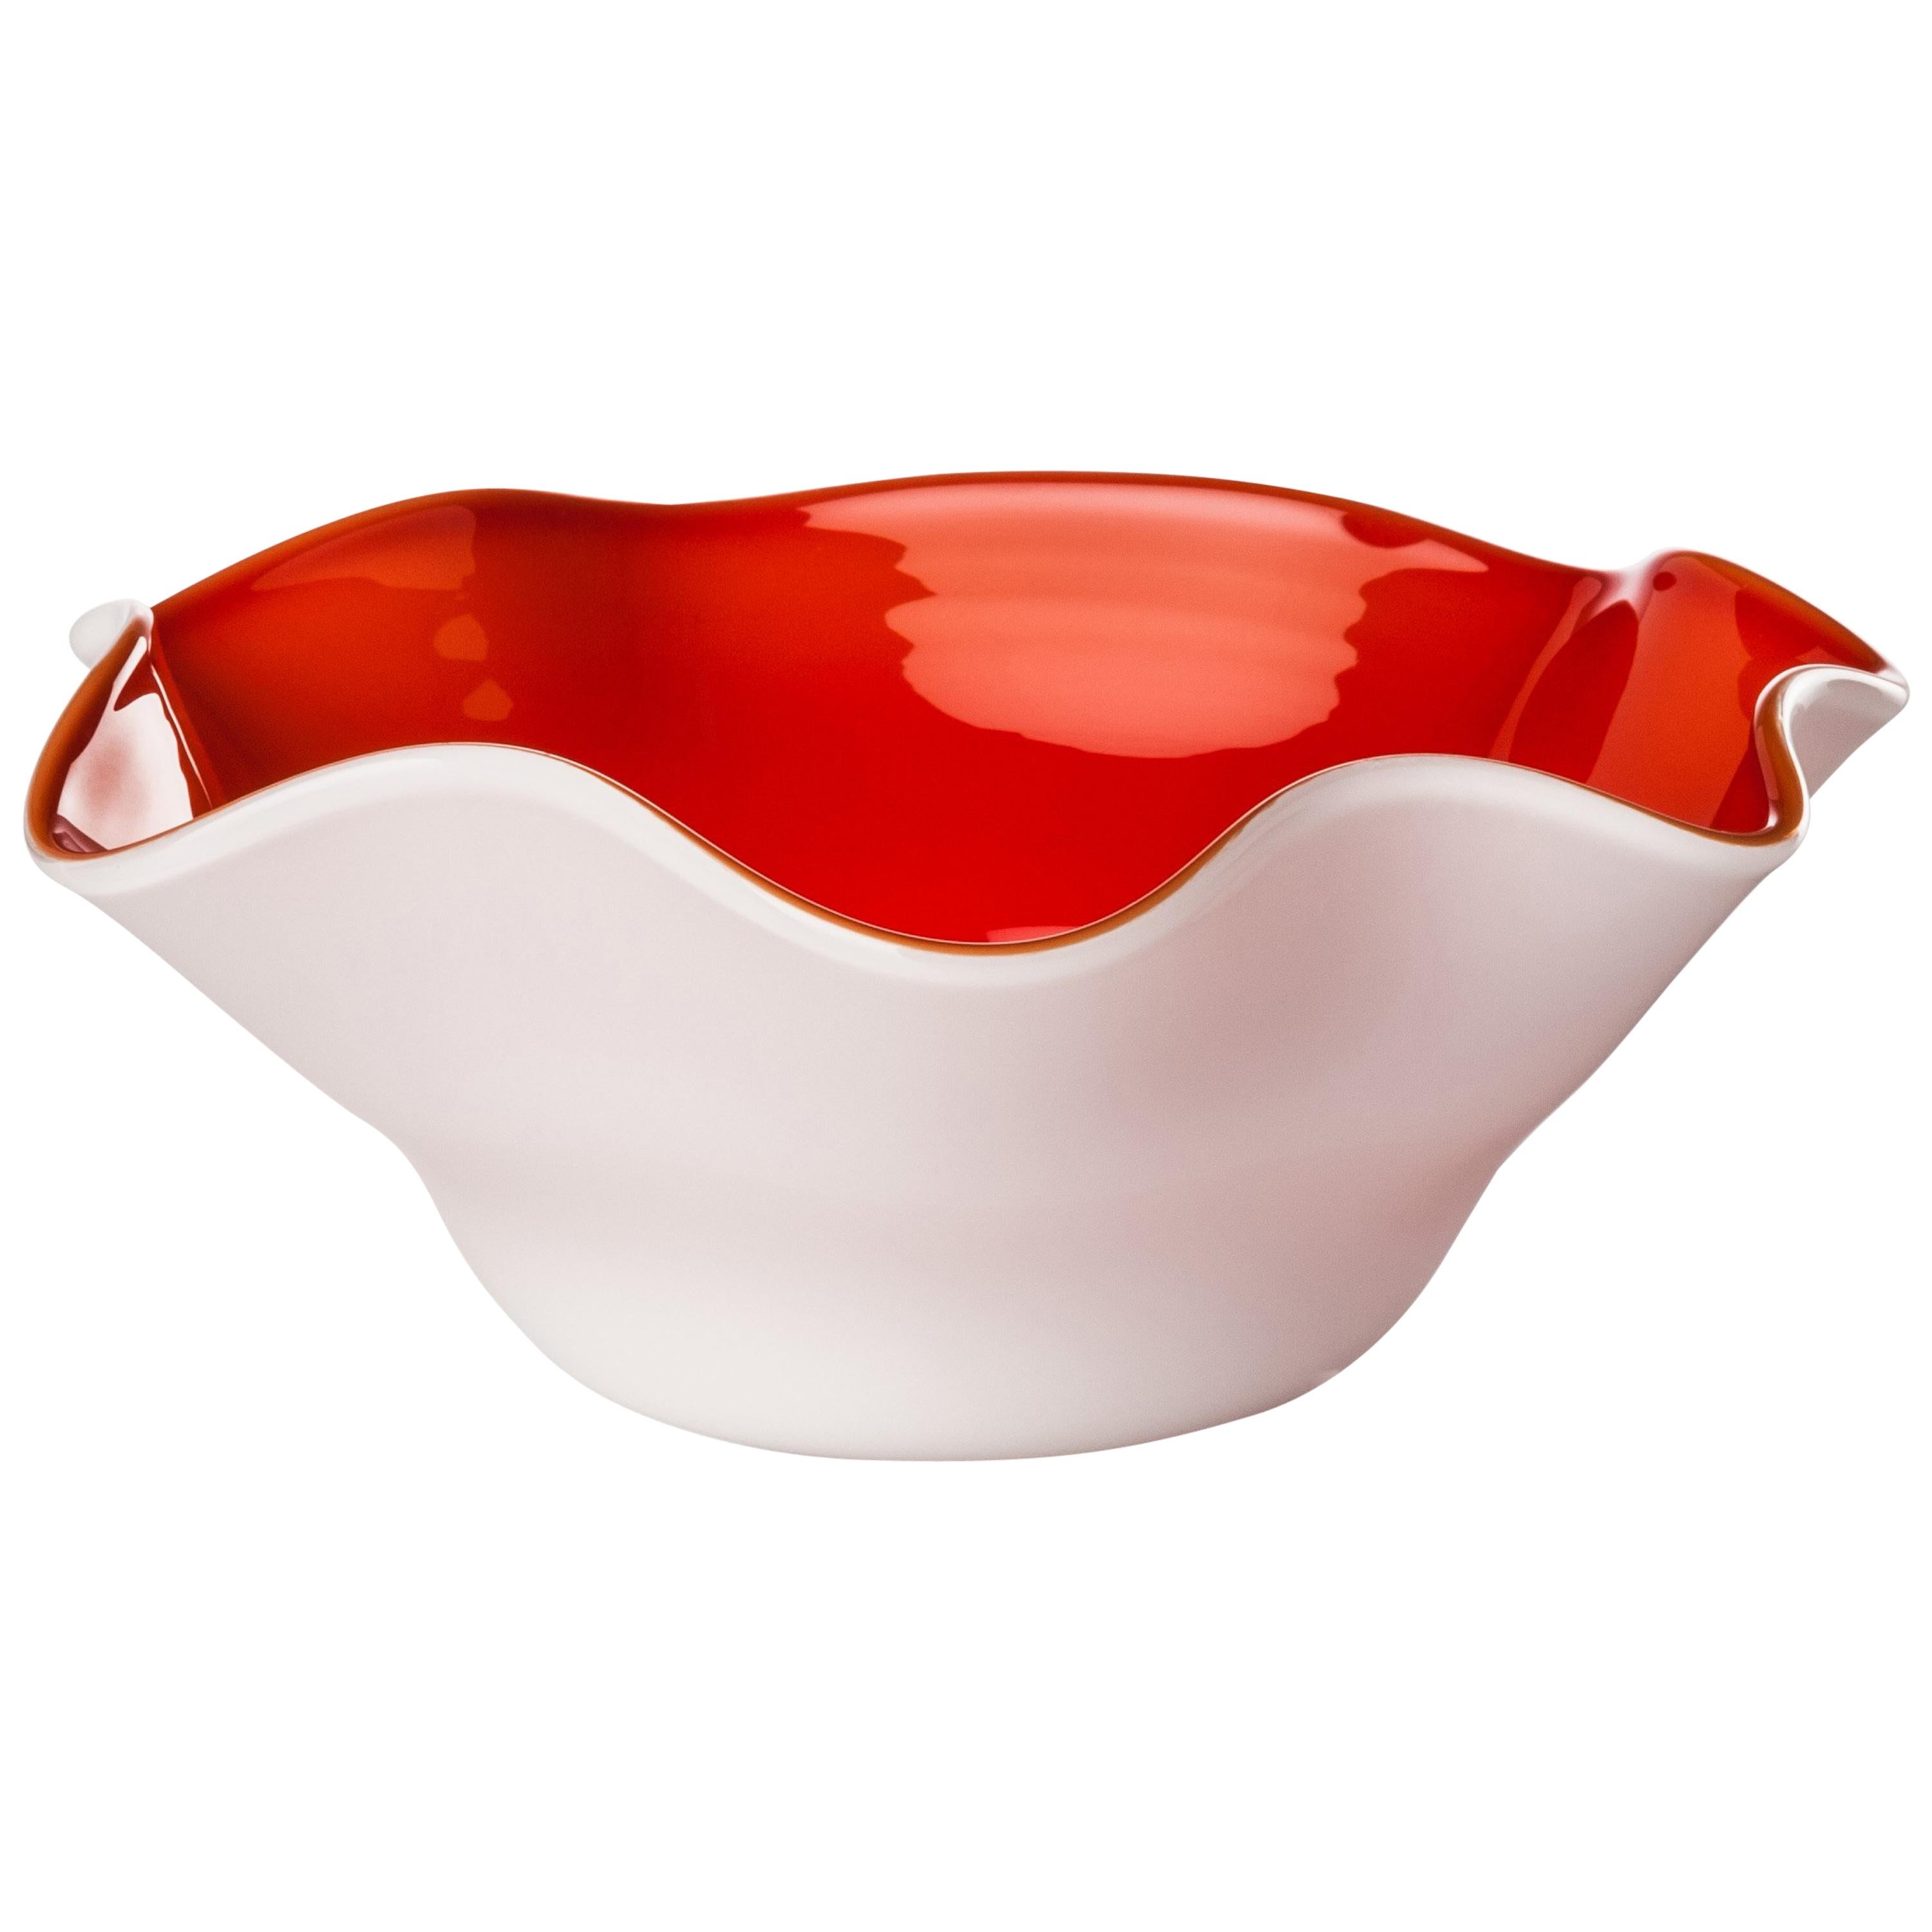 Venini Fazzoletto Ovale Bicolor Red & White Bowl by Fulvio Bianconi & Venini